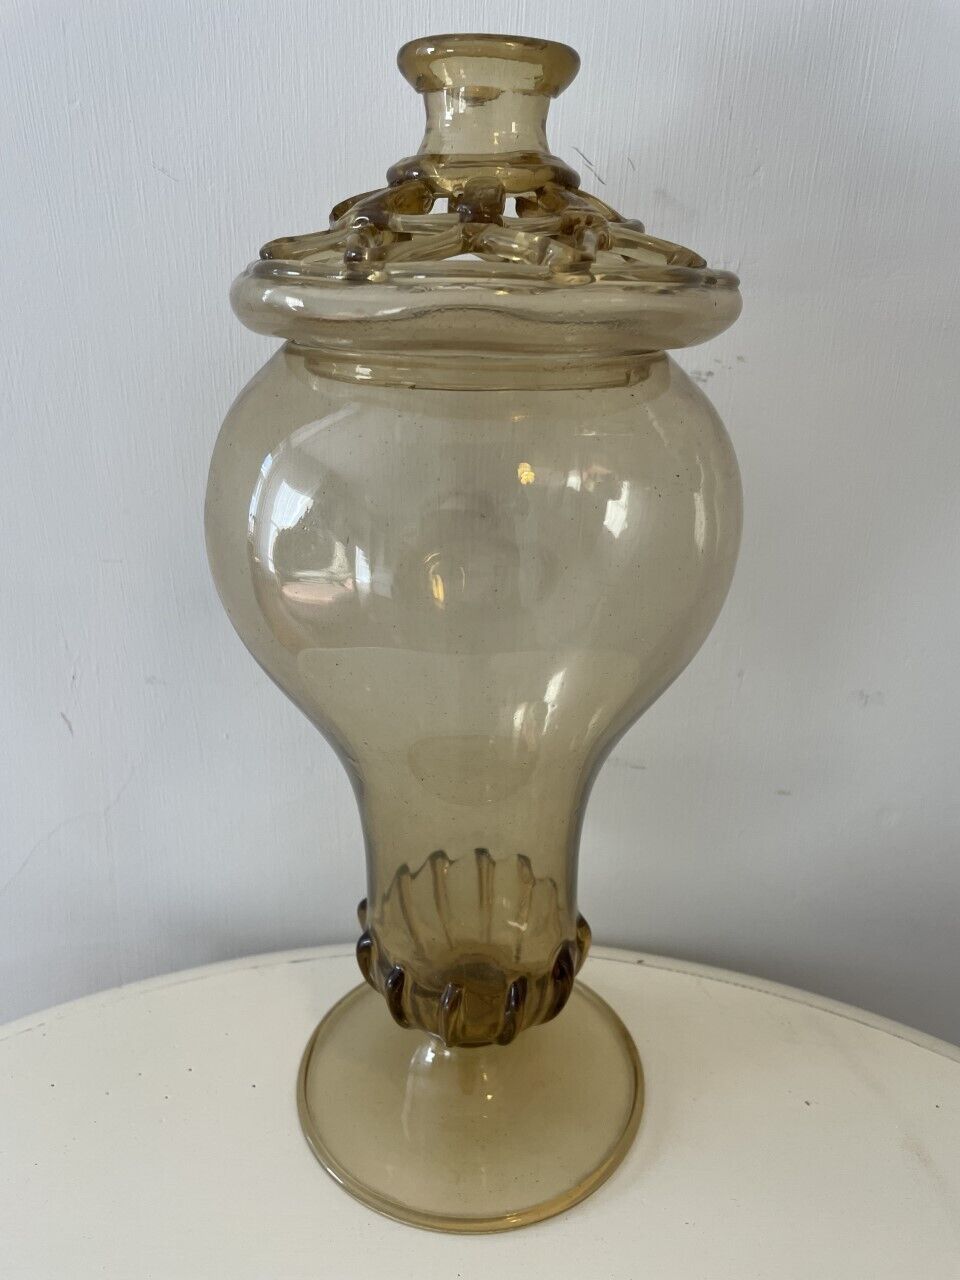 Delicate & rare 17th century Venetian light amber glass flower vase